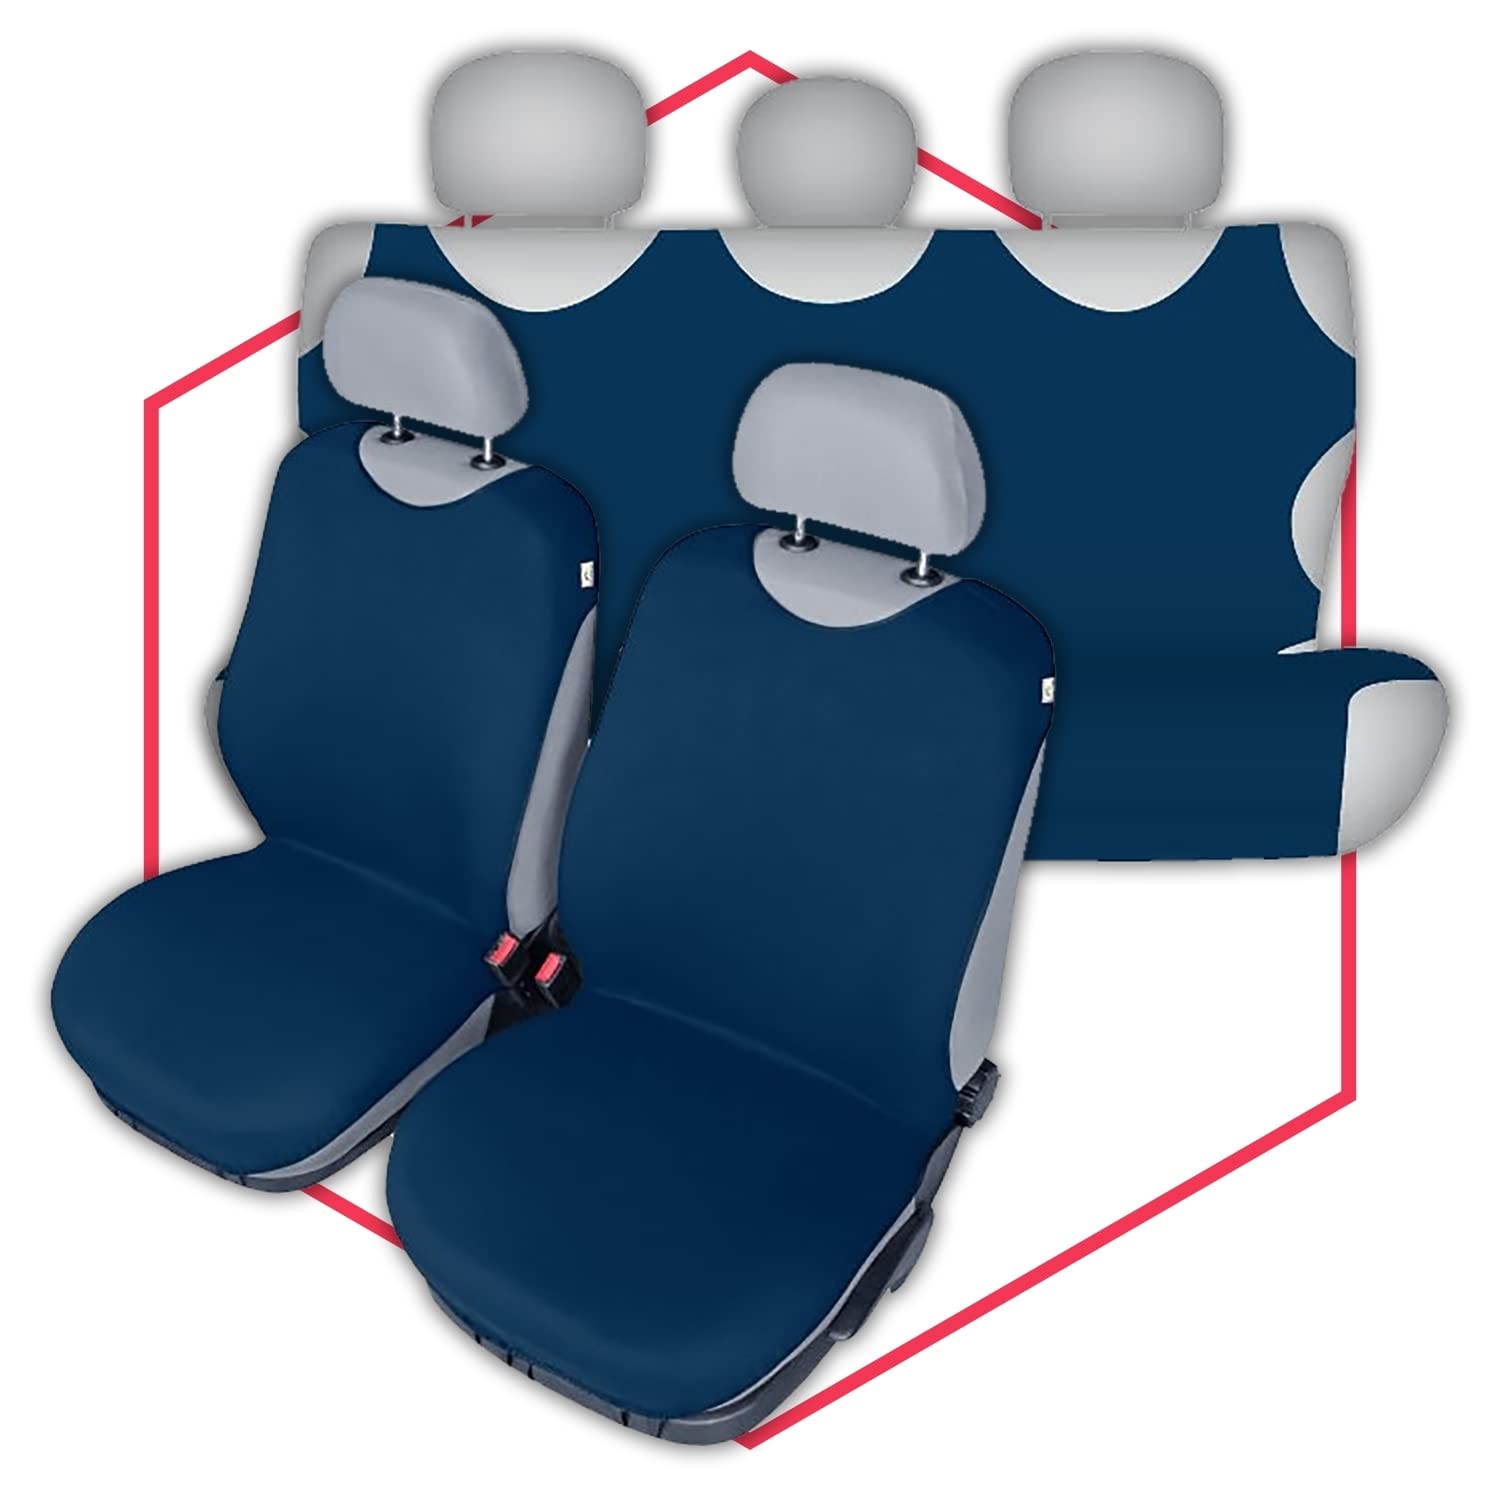 Autositzbezüge Autositzschoner Sitzbezüge Kompatibel mit Hyundai i40 Auto Sitzbezug 100% Baumwolle Autositzauflage Autositz Sitzauflagen Tuning Auto Zubehör Innenraum von Saferide